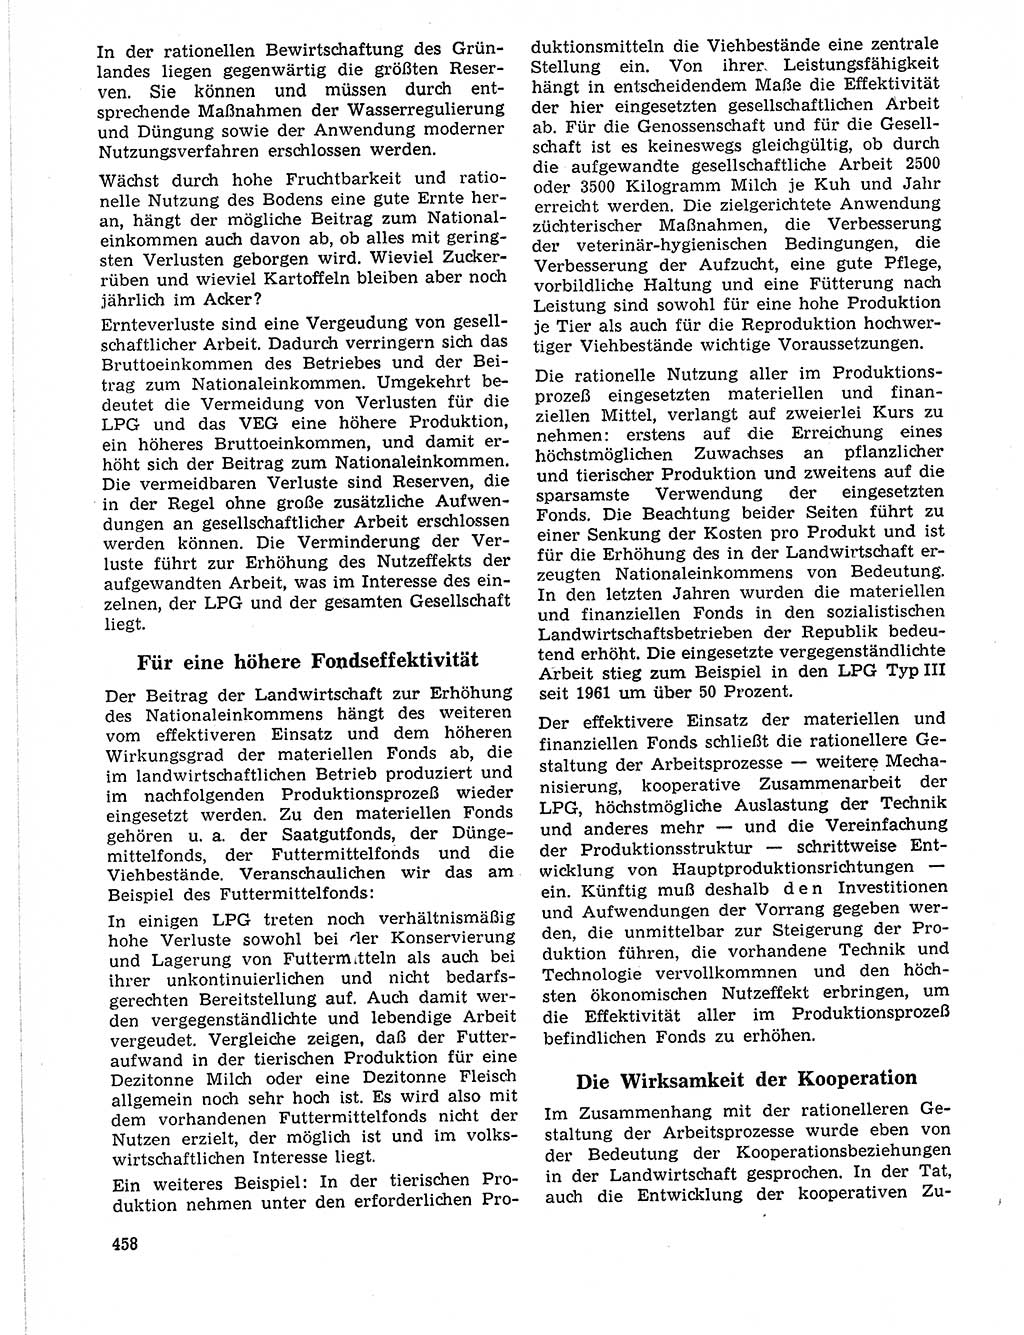 Neuer Weg (NW), Organ des Zentralkomitees (ZK) der SED (Sozialistische Einheitspartei Deutschlands) für Fragen des Parteilebens, 21. Jahrgang [Deutsche Demokratische Republik (DDR)] 1966, Seite 458 (NW ZK SED DDR 1966, S. 458)